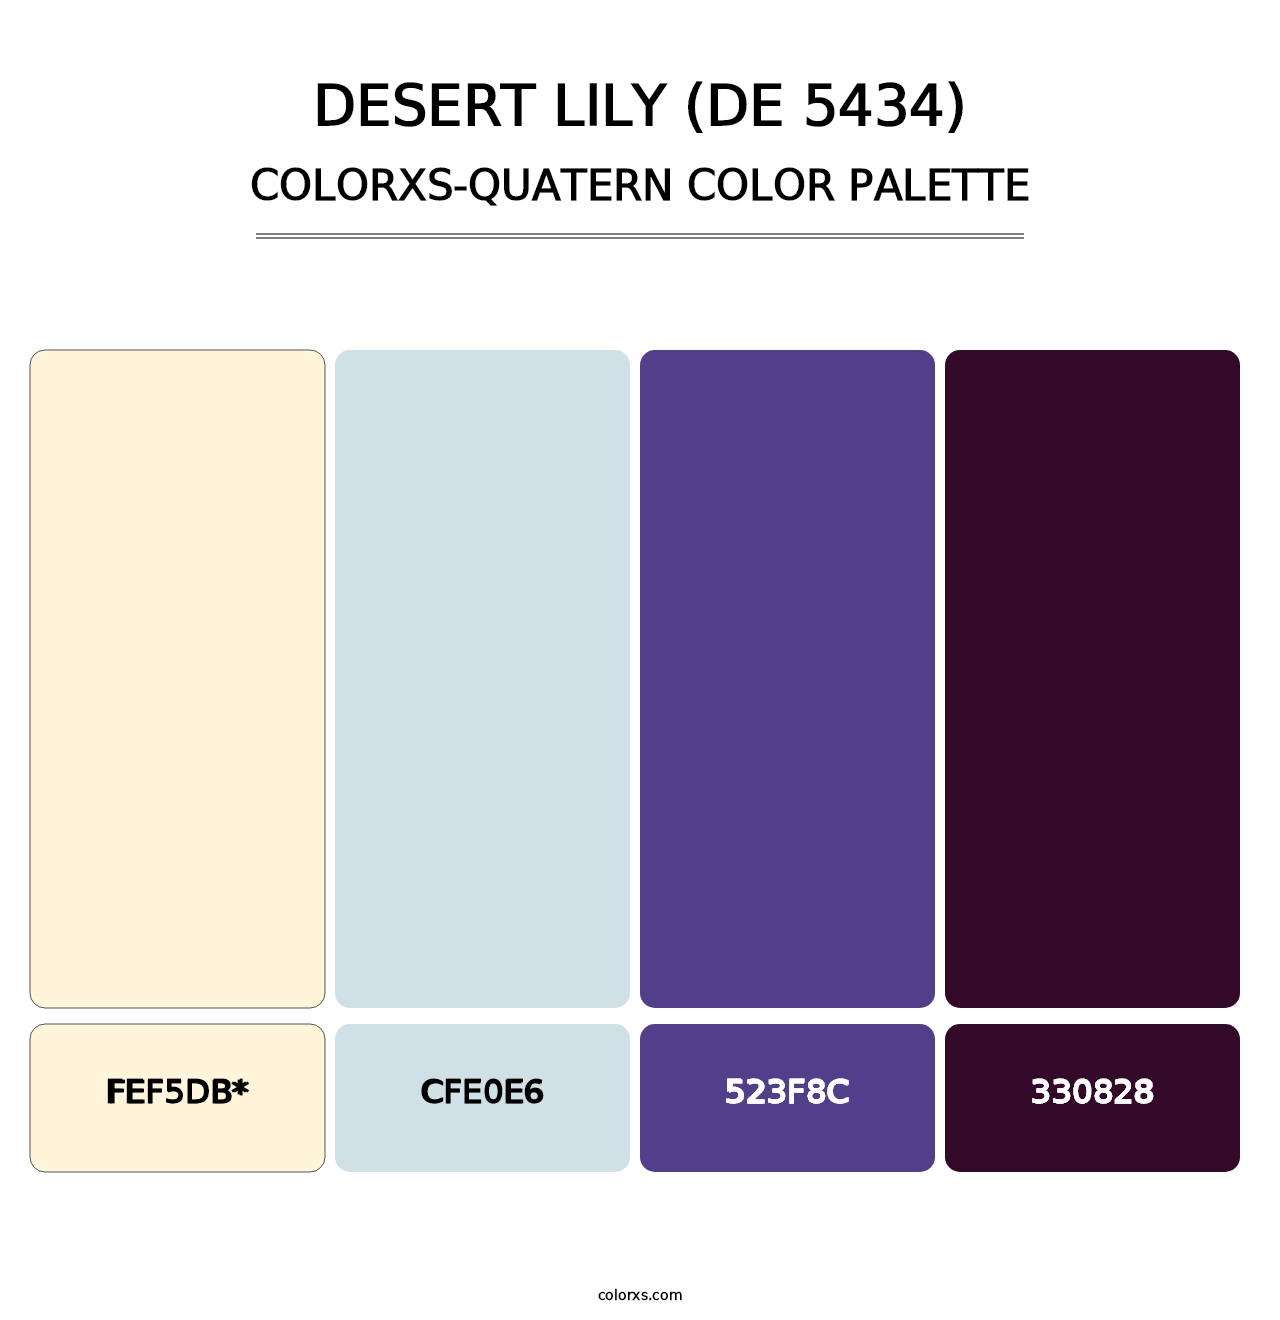 Desert Lily (DE 5434) - Colorxs Quatern Palette